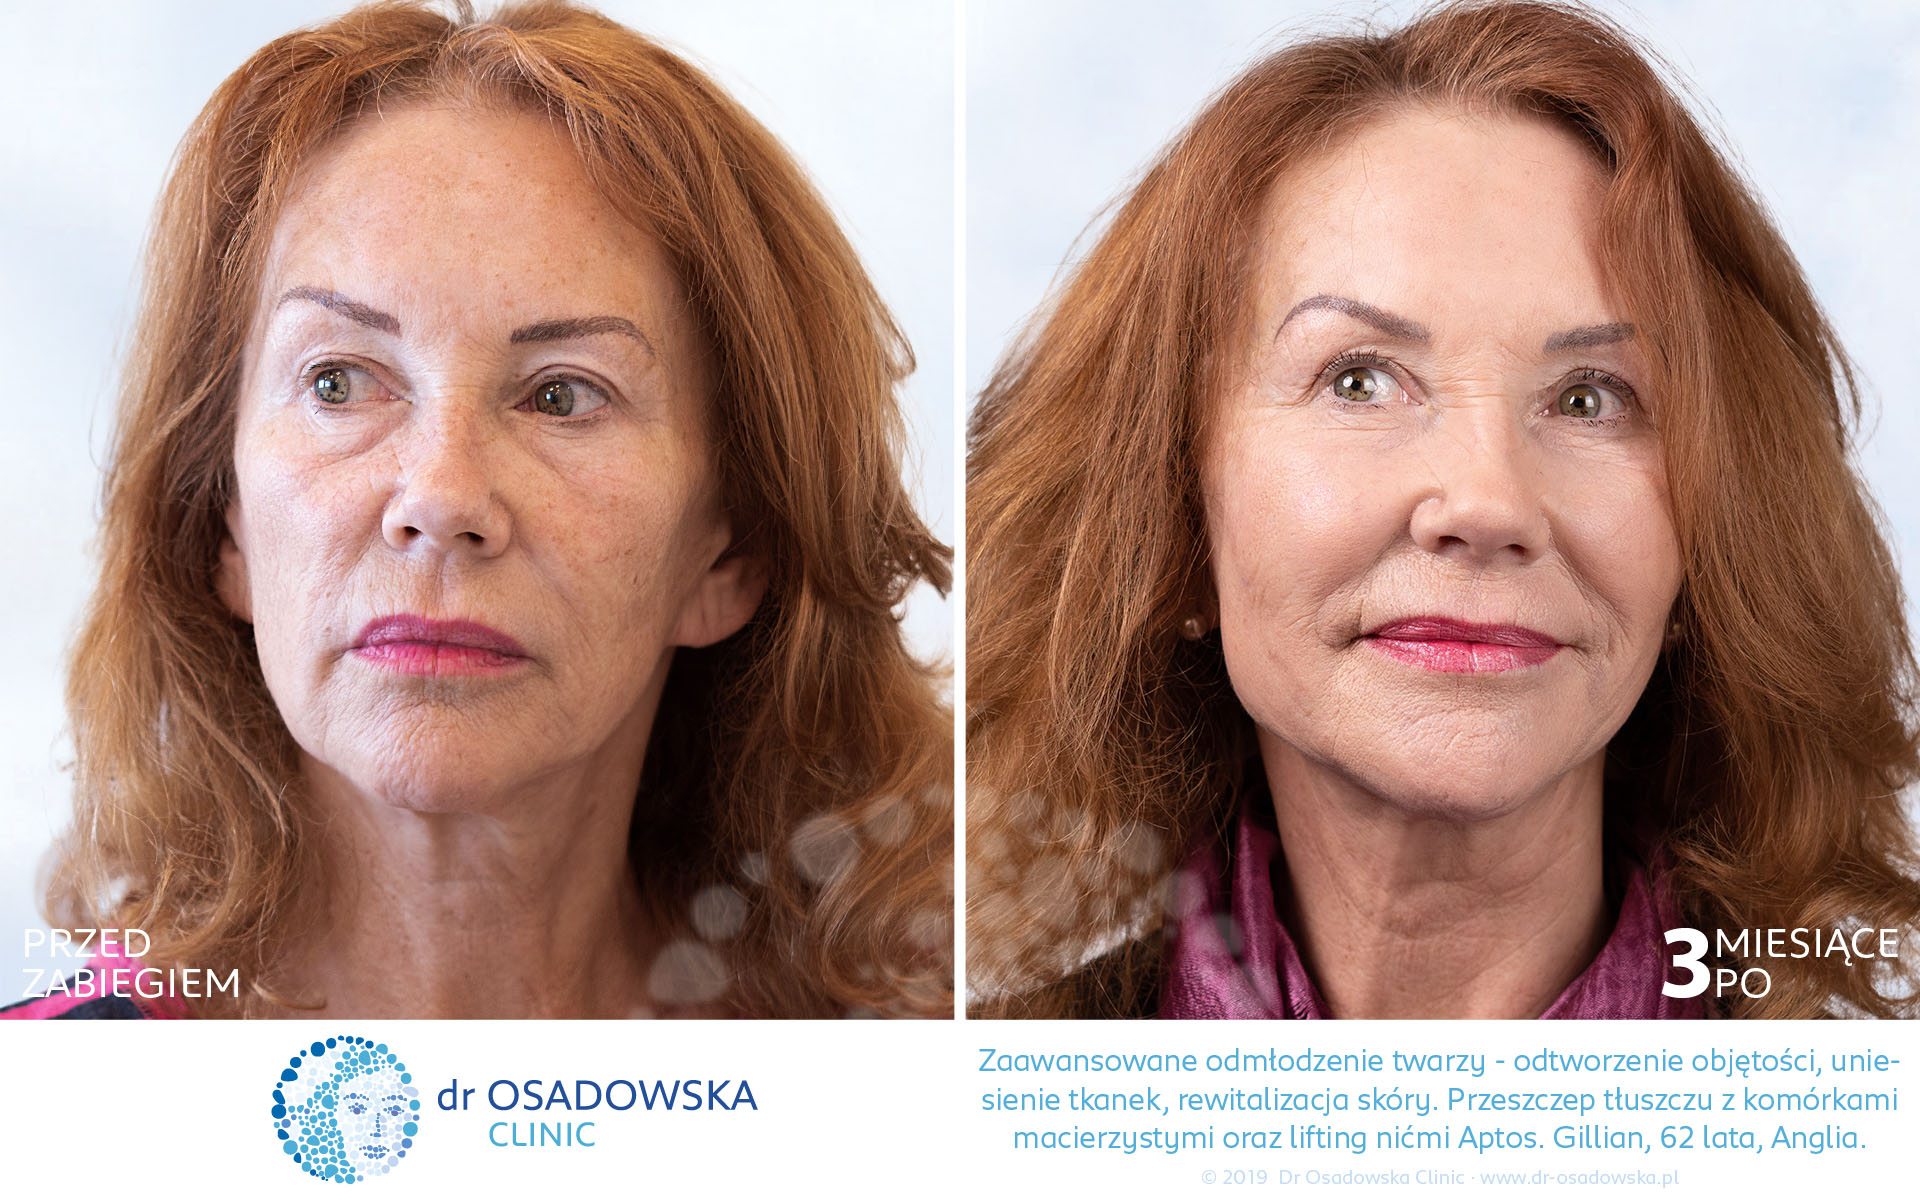 Zdjęcia: odmłodzenie i rewitalizacja twarzy dla Gillian z Anglii, 62 lata. Nici liftingujące Aptos oraz przeszczep własnej tkanki tłuszczowej. Przed i 3 miesiące po zabiegu (1)